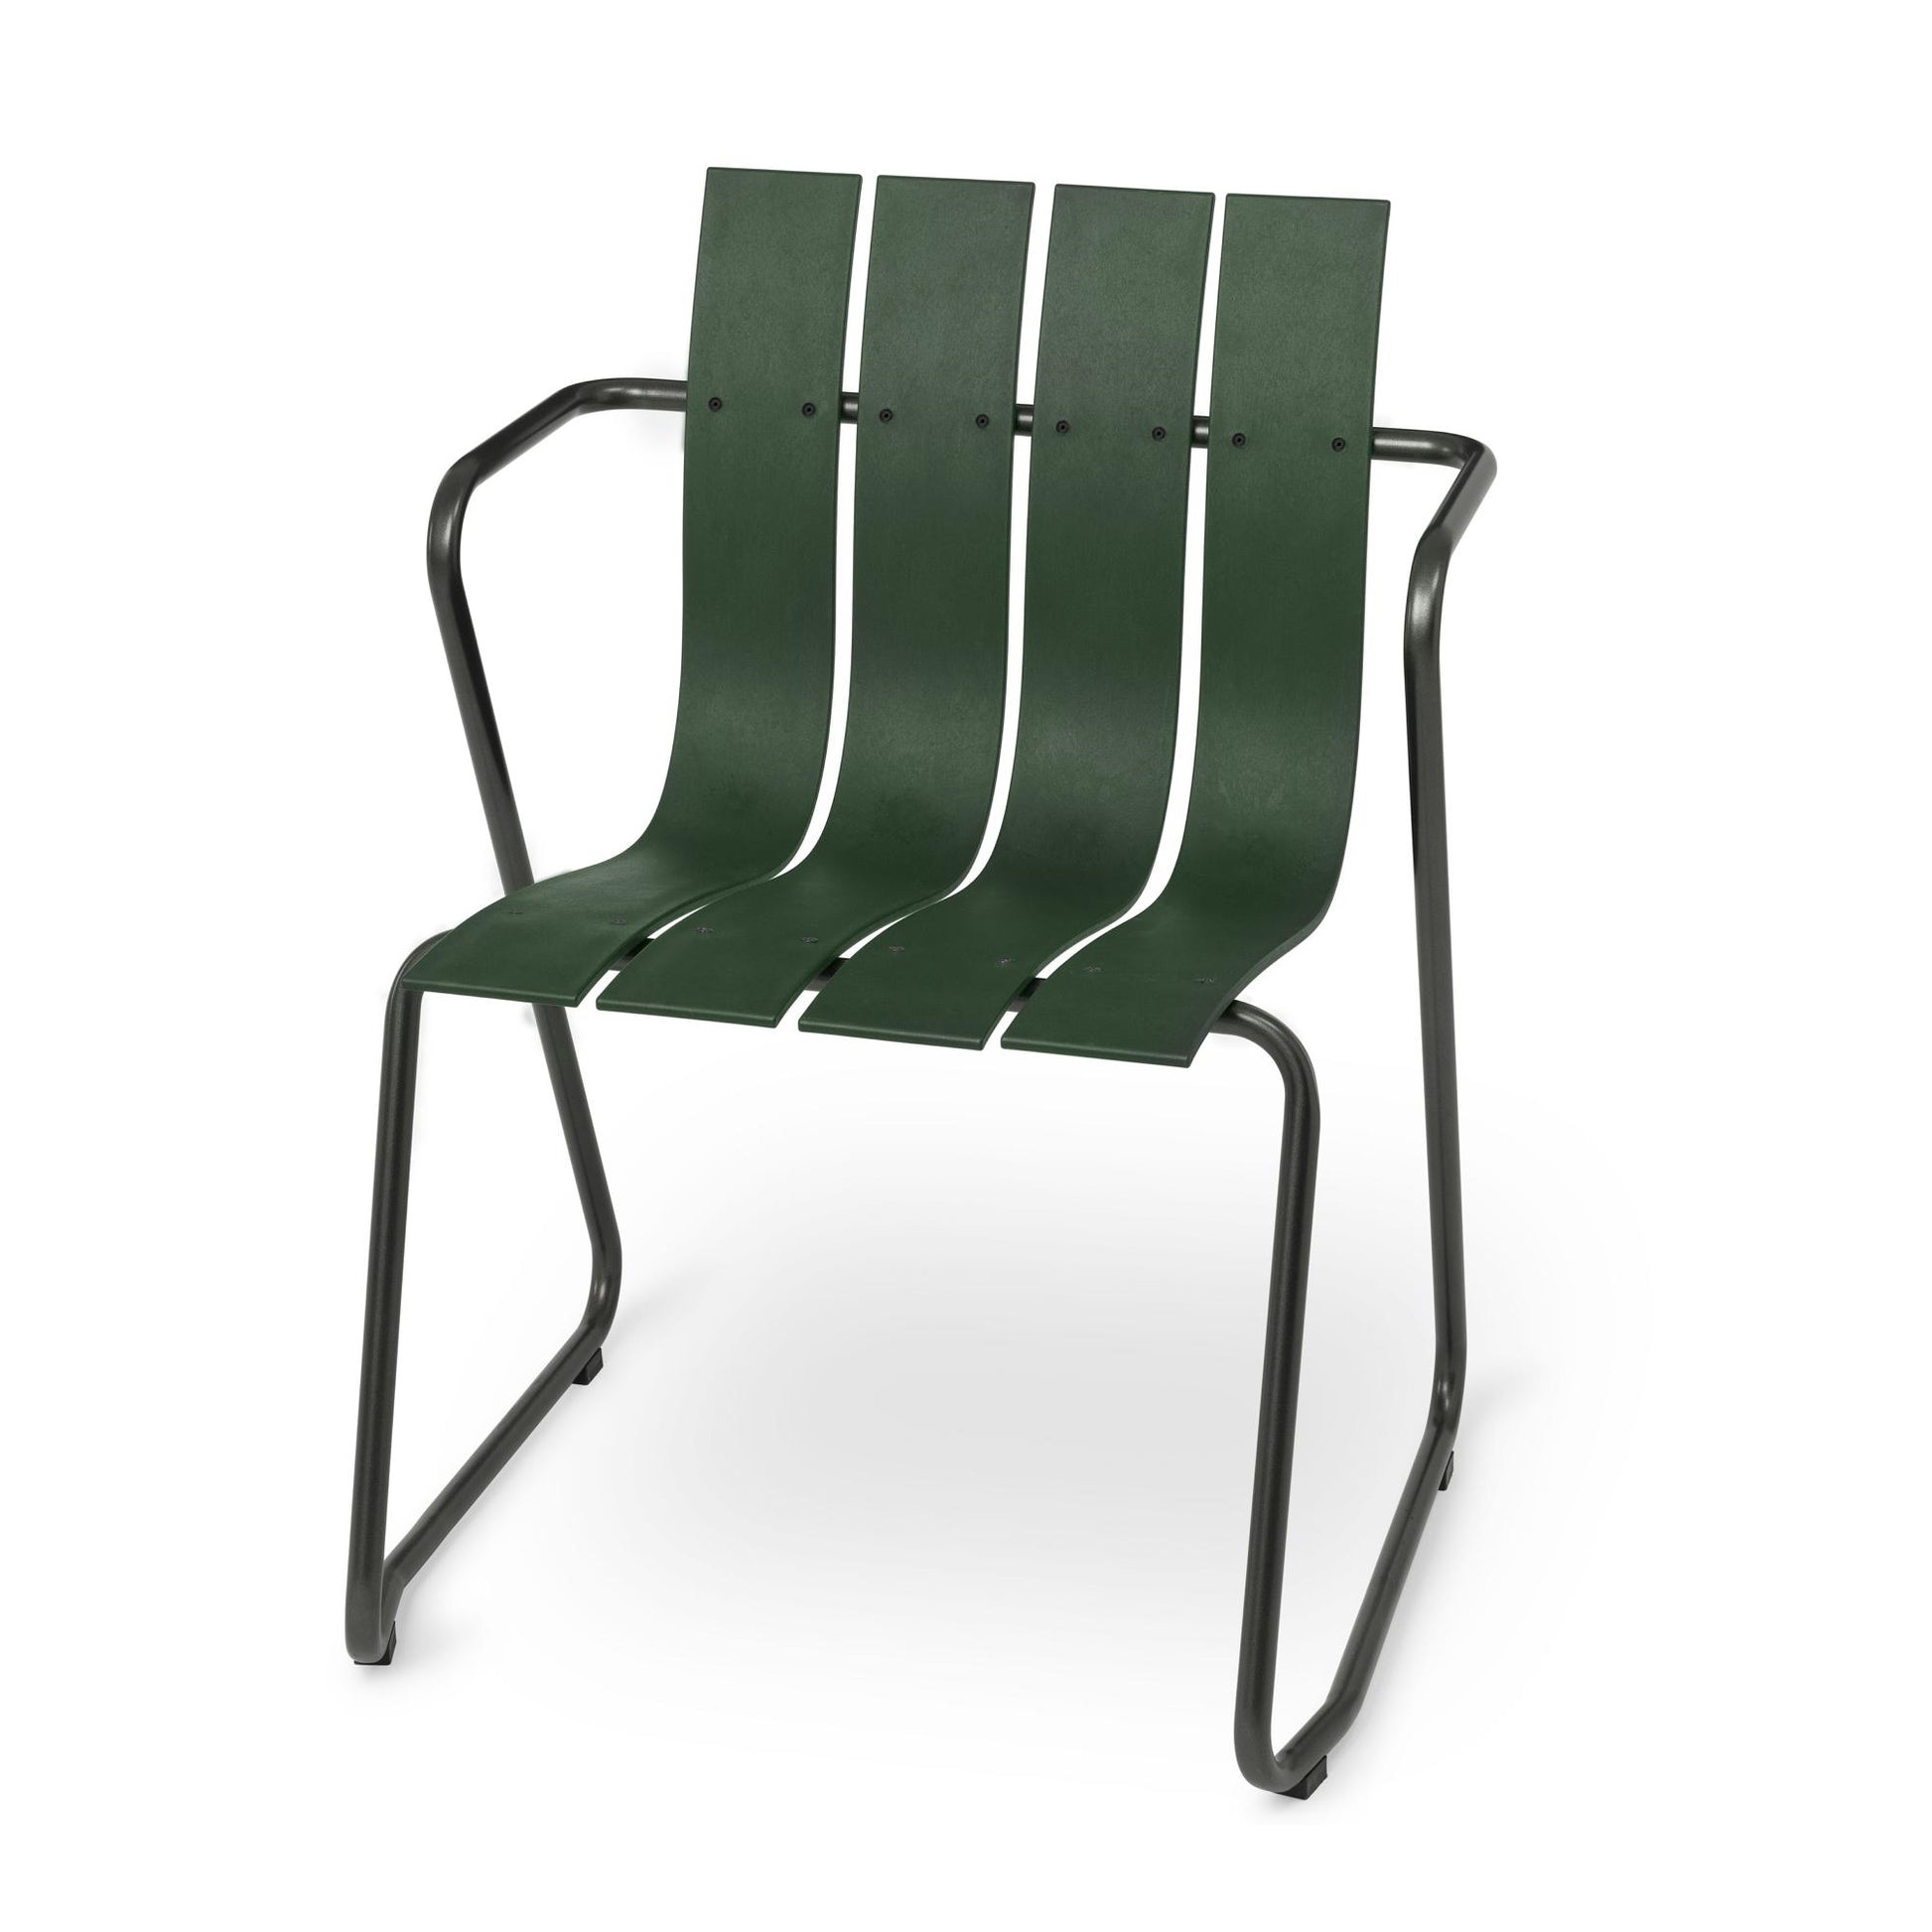 Ocean Chair by Mater #Green